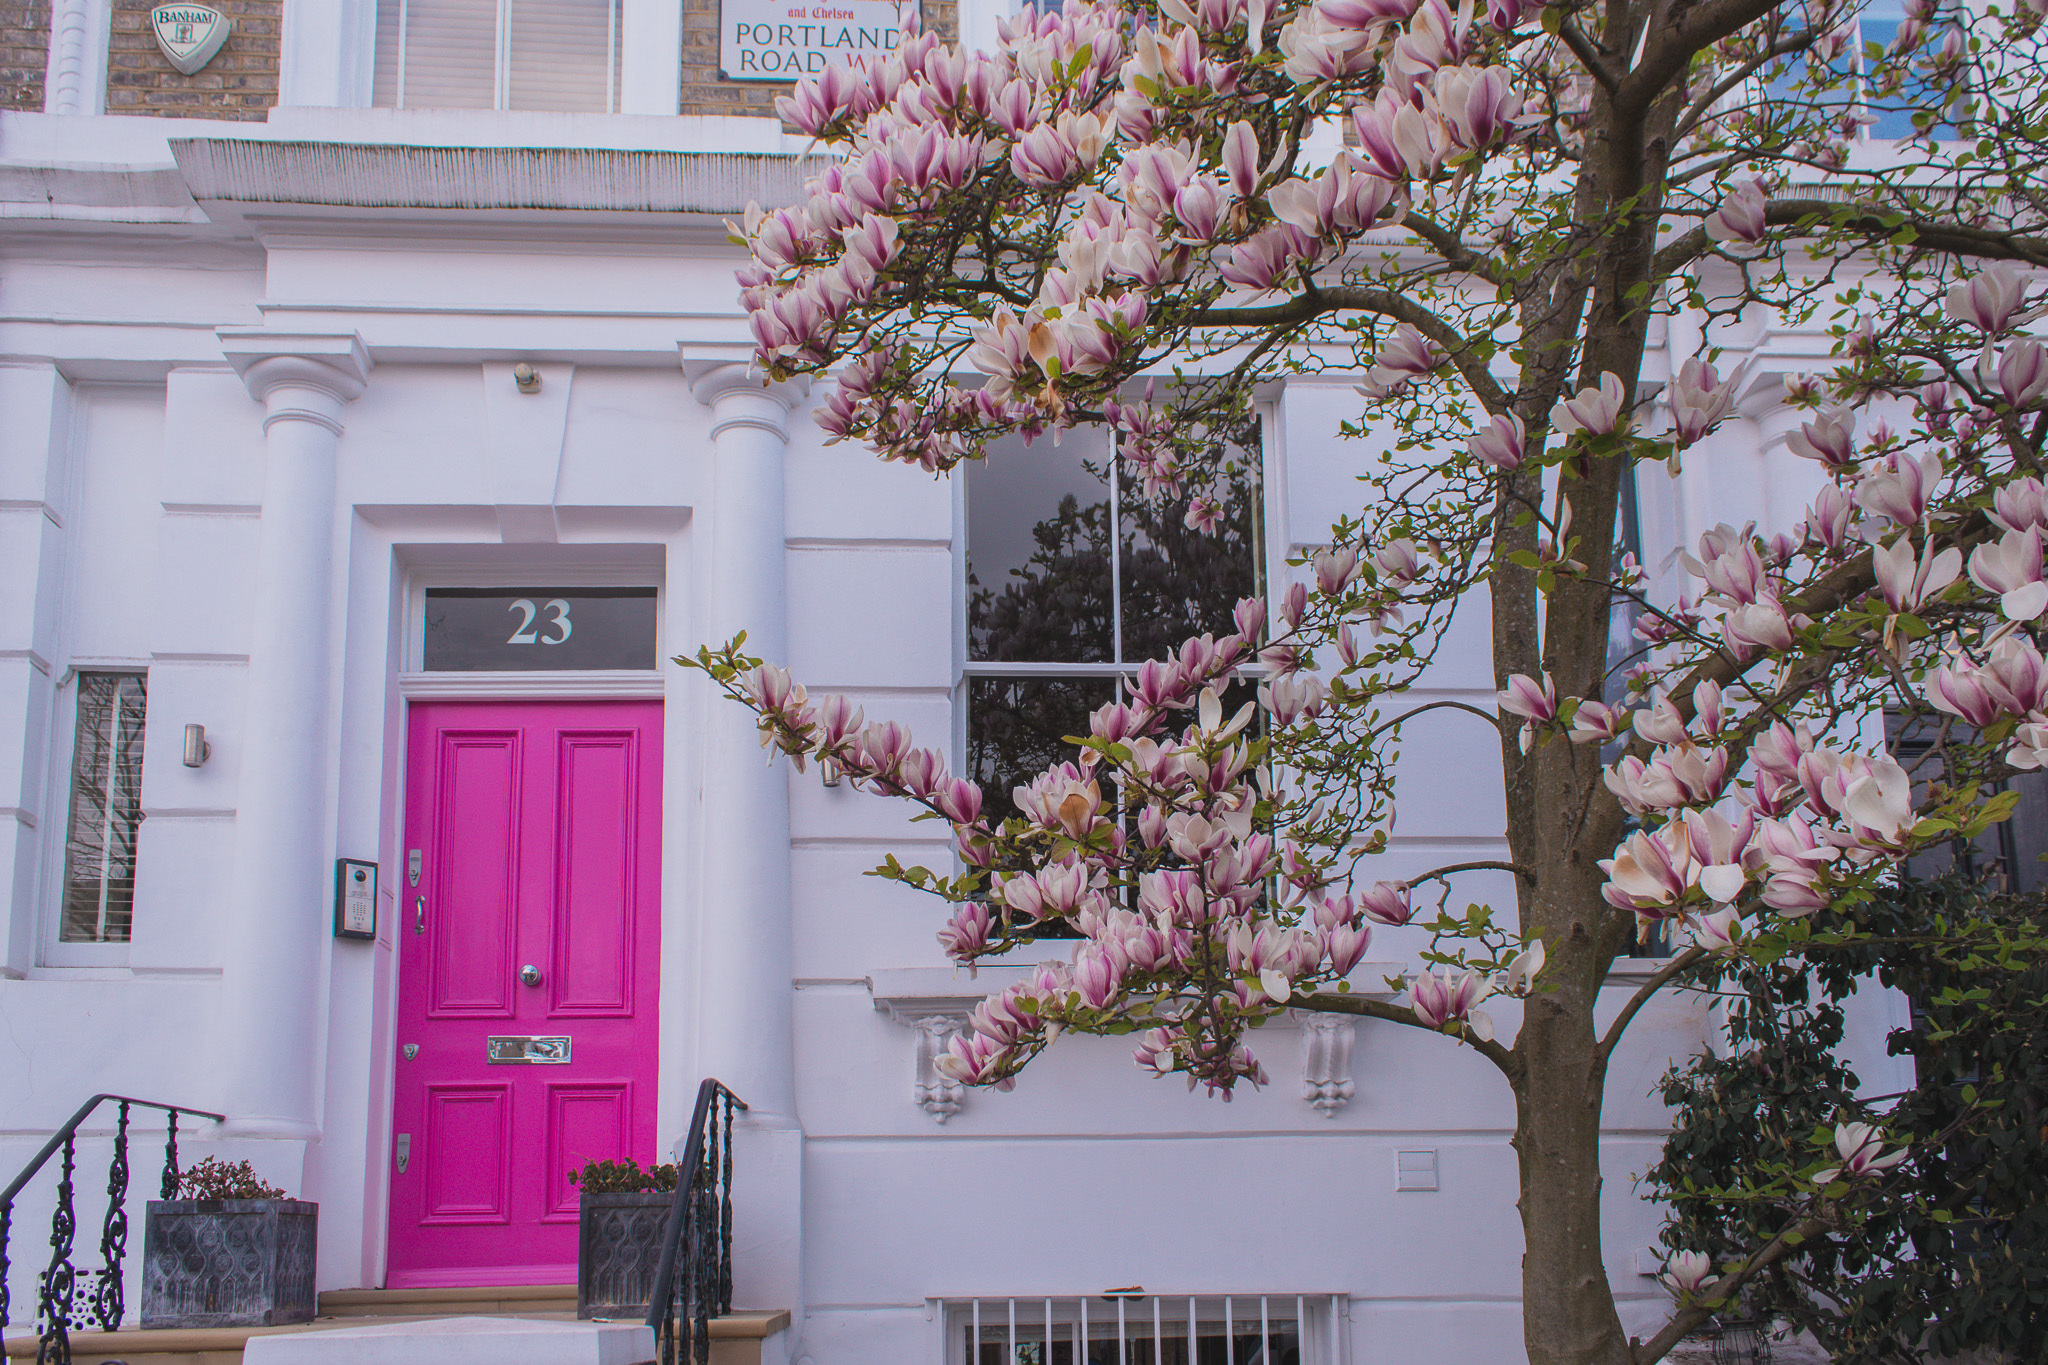 23 Portland Road in bloom, Notting Hill, London